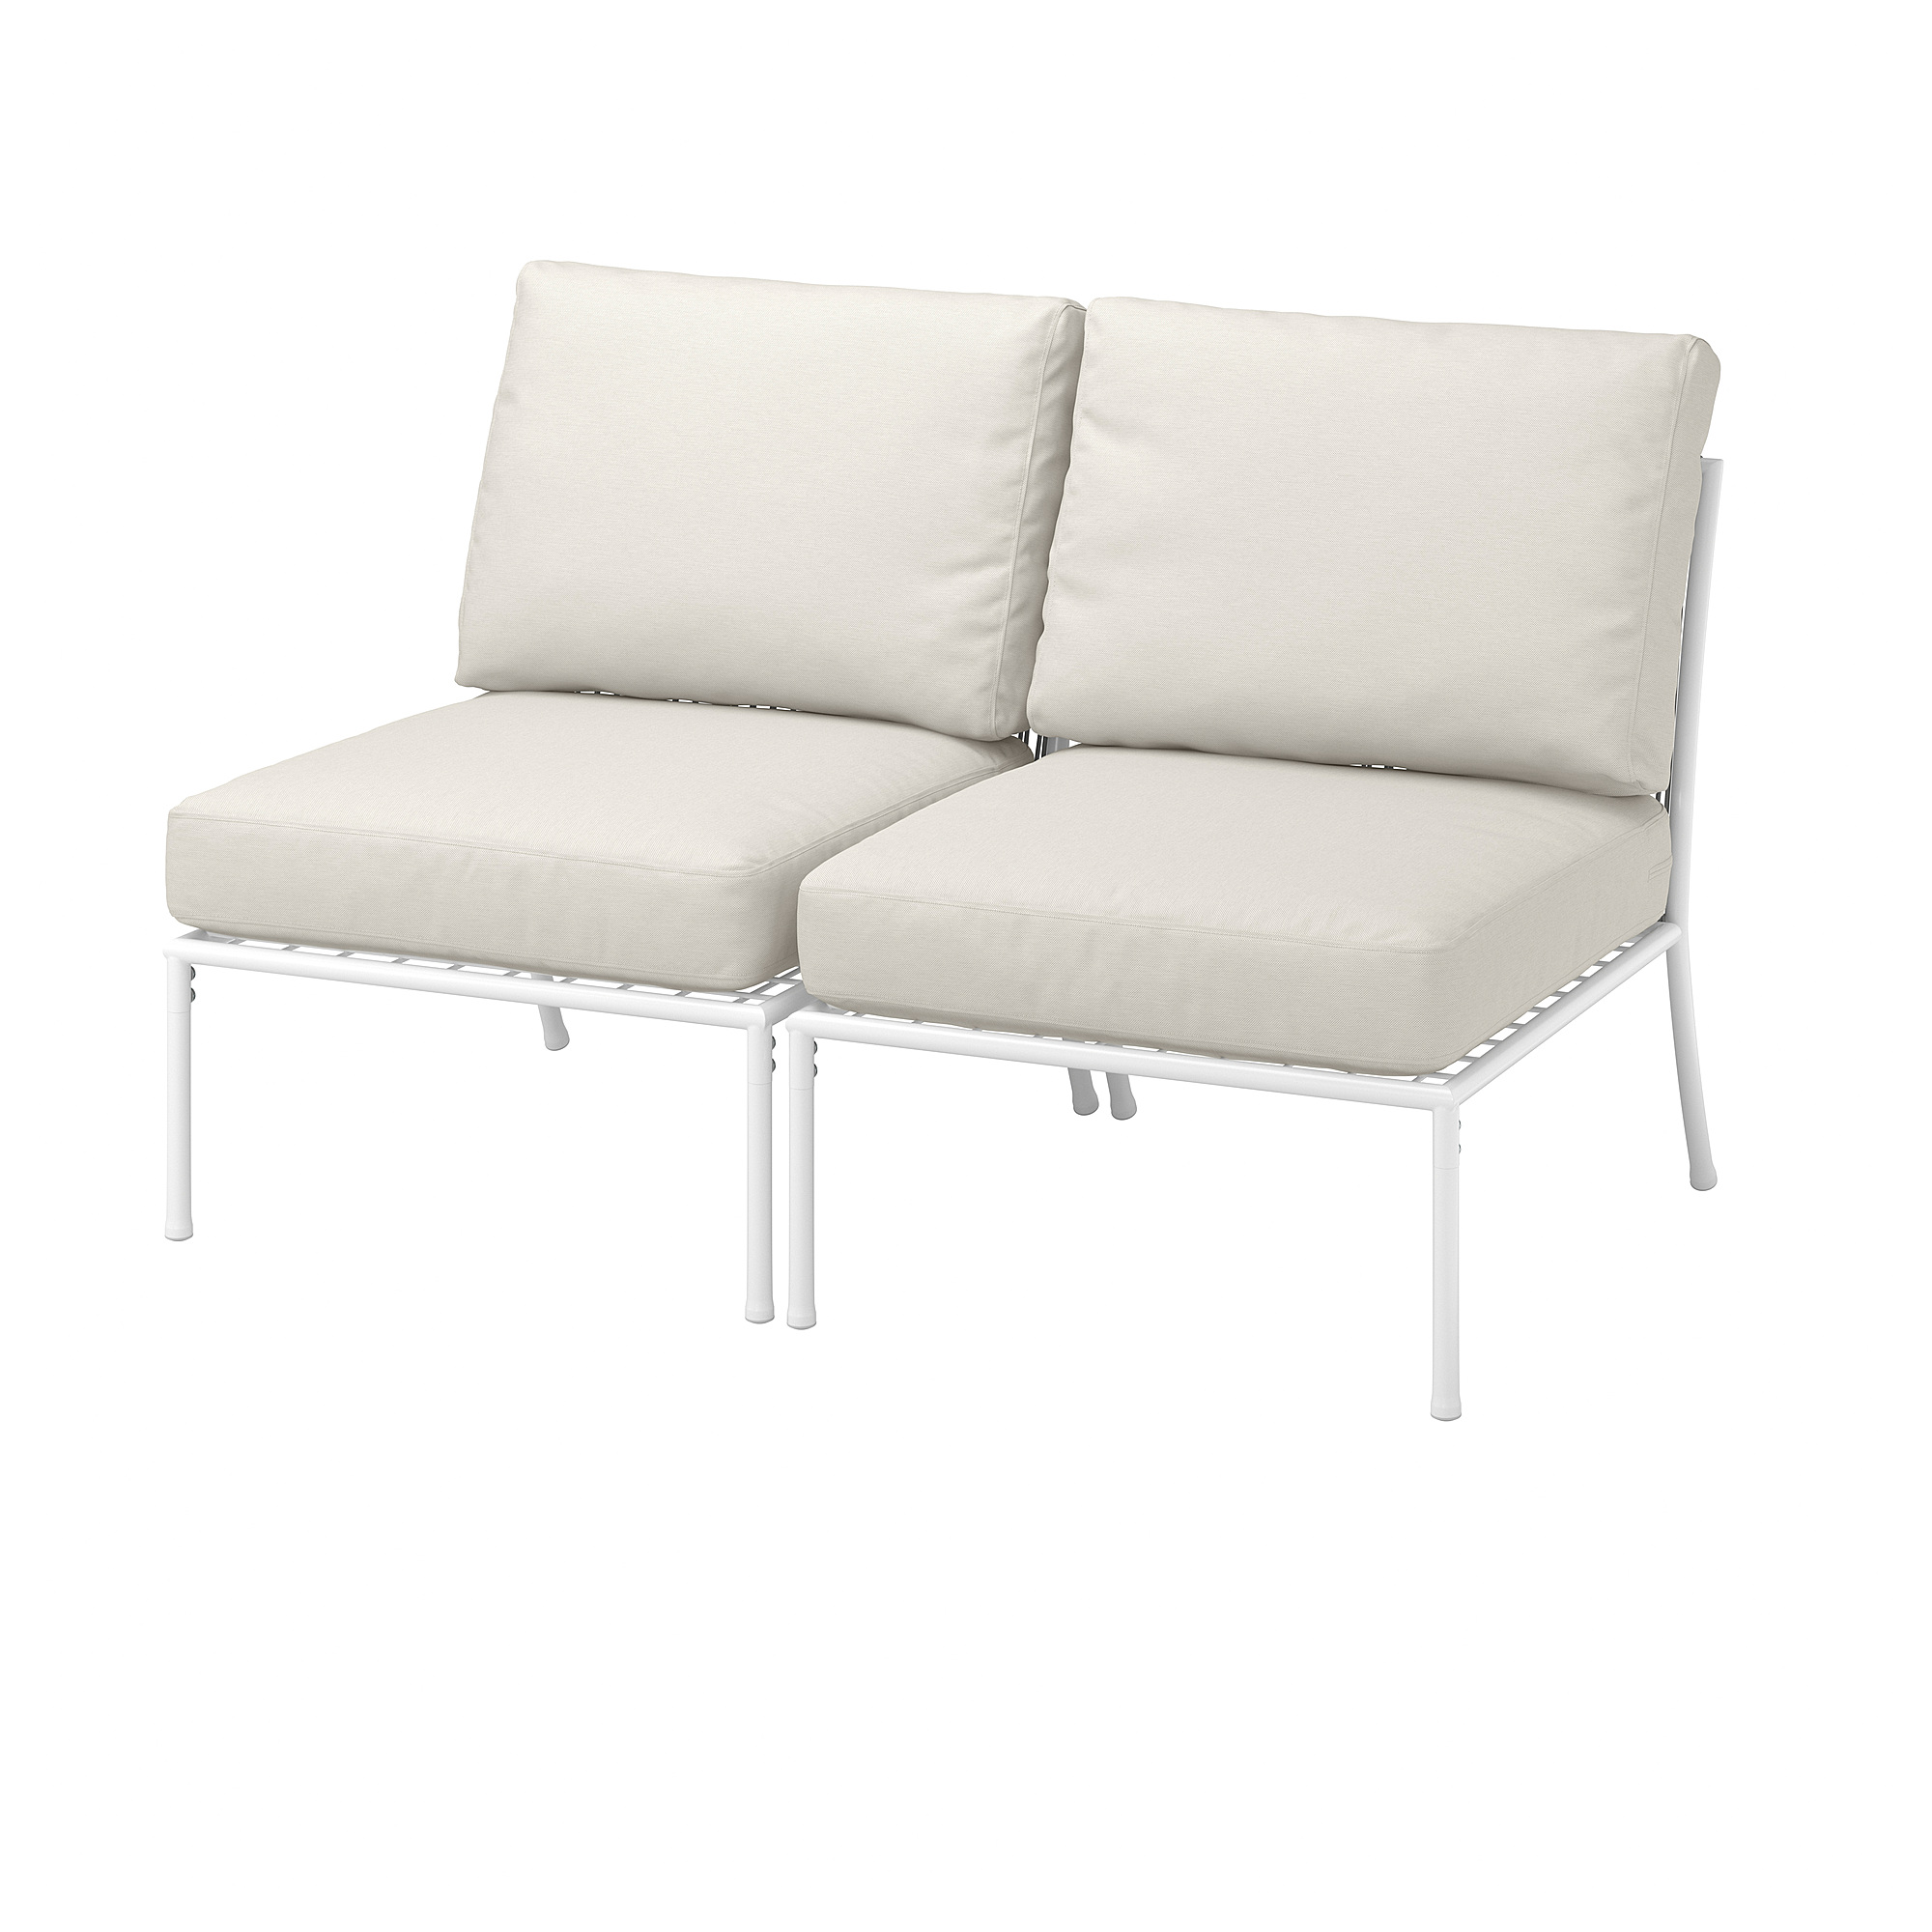 SEGERÖN 2-seat sofa, outdoor